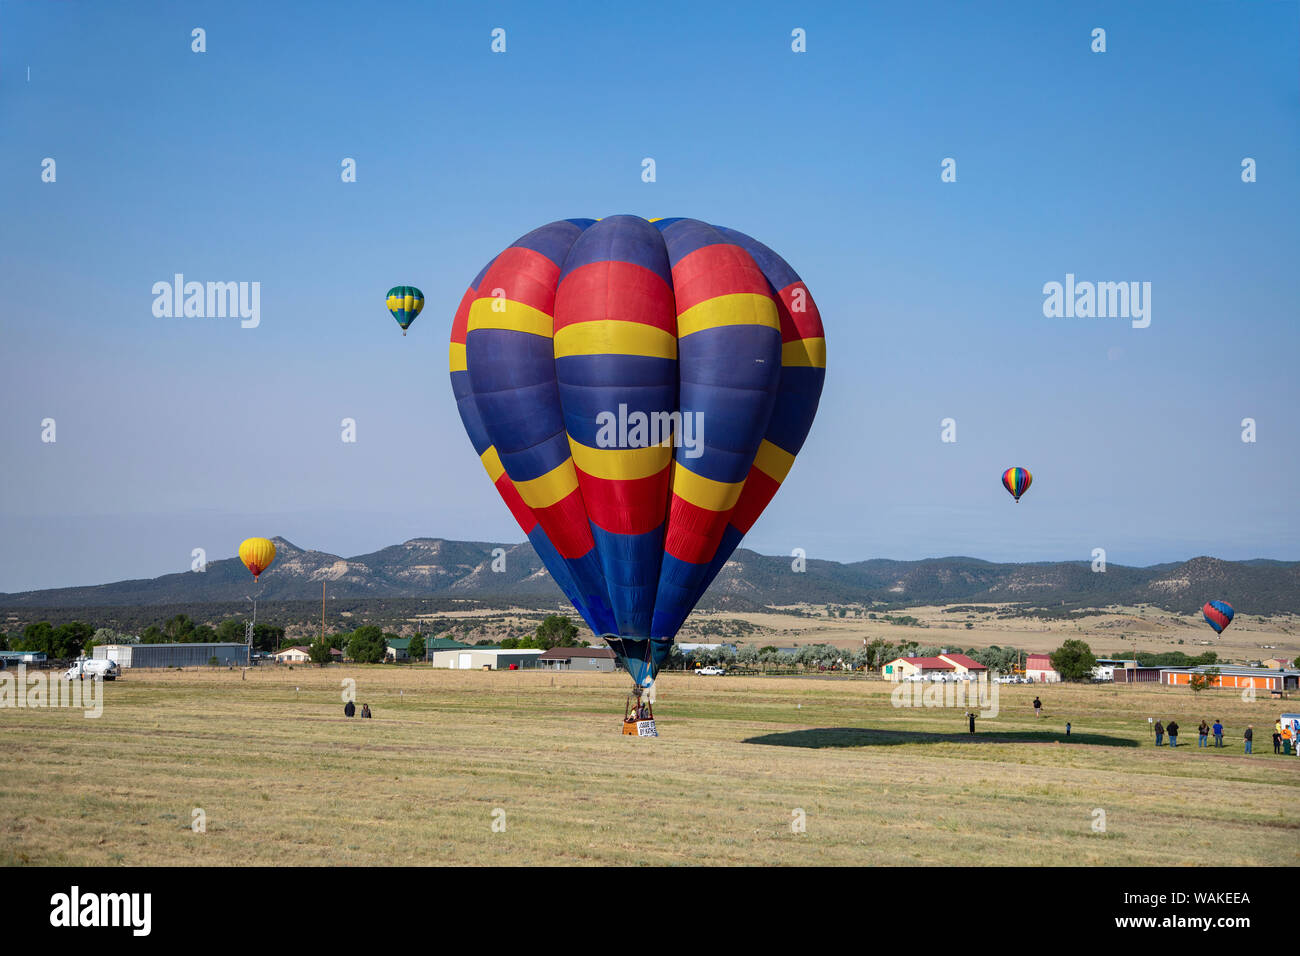 Hot Air Balloon portant la couleur pour le ciel. (Usage éditorial uniquement) Banque D'Images